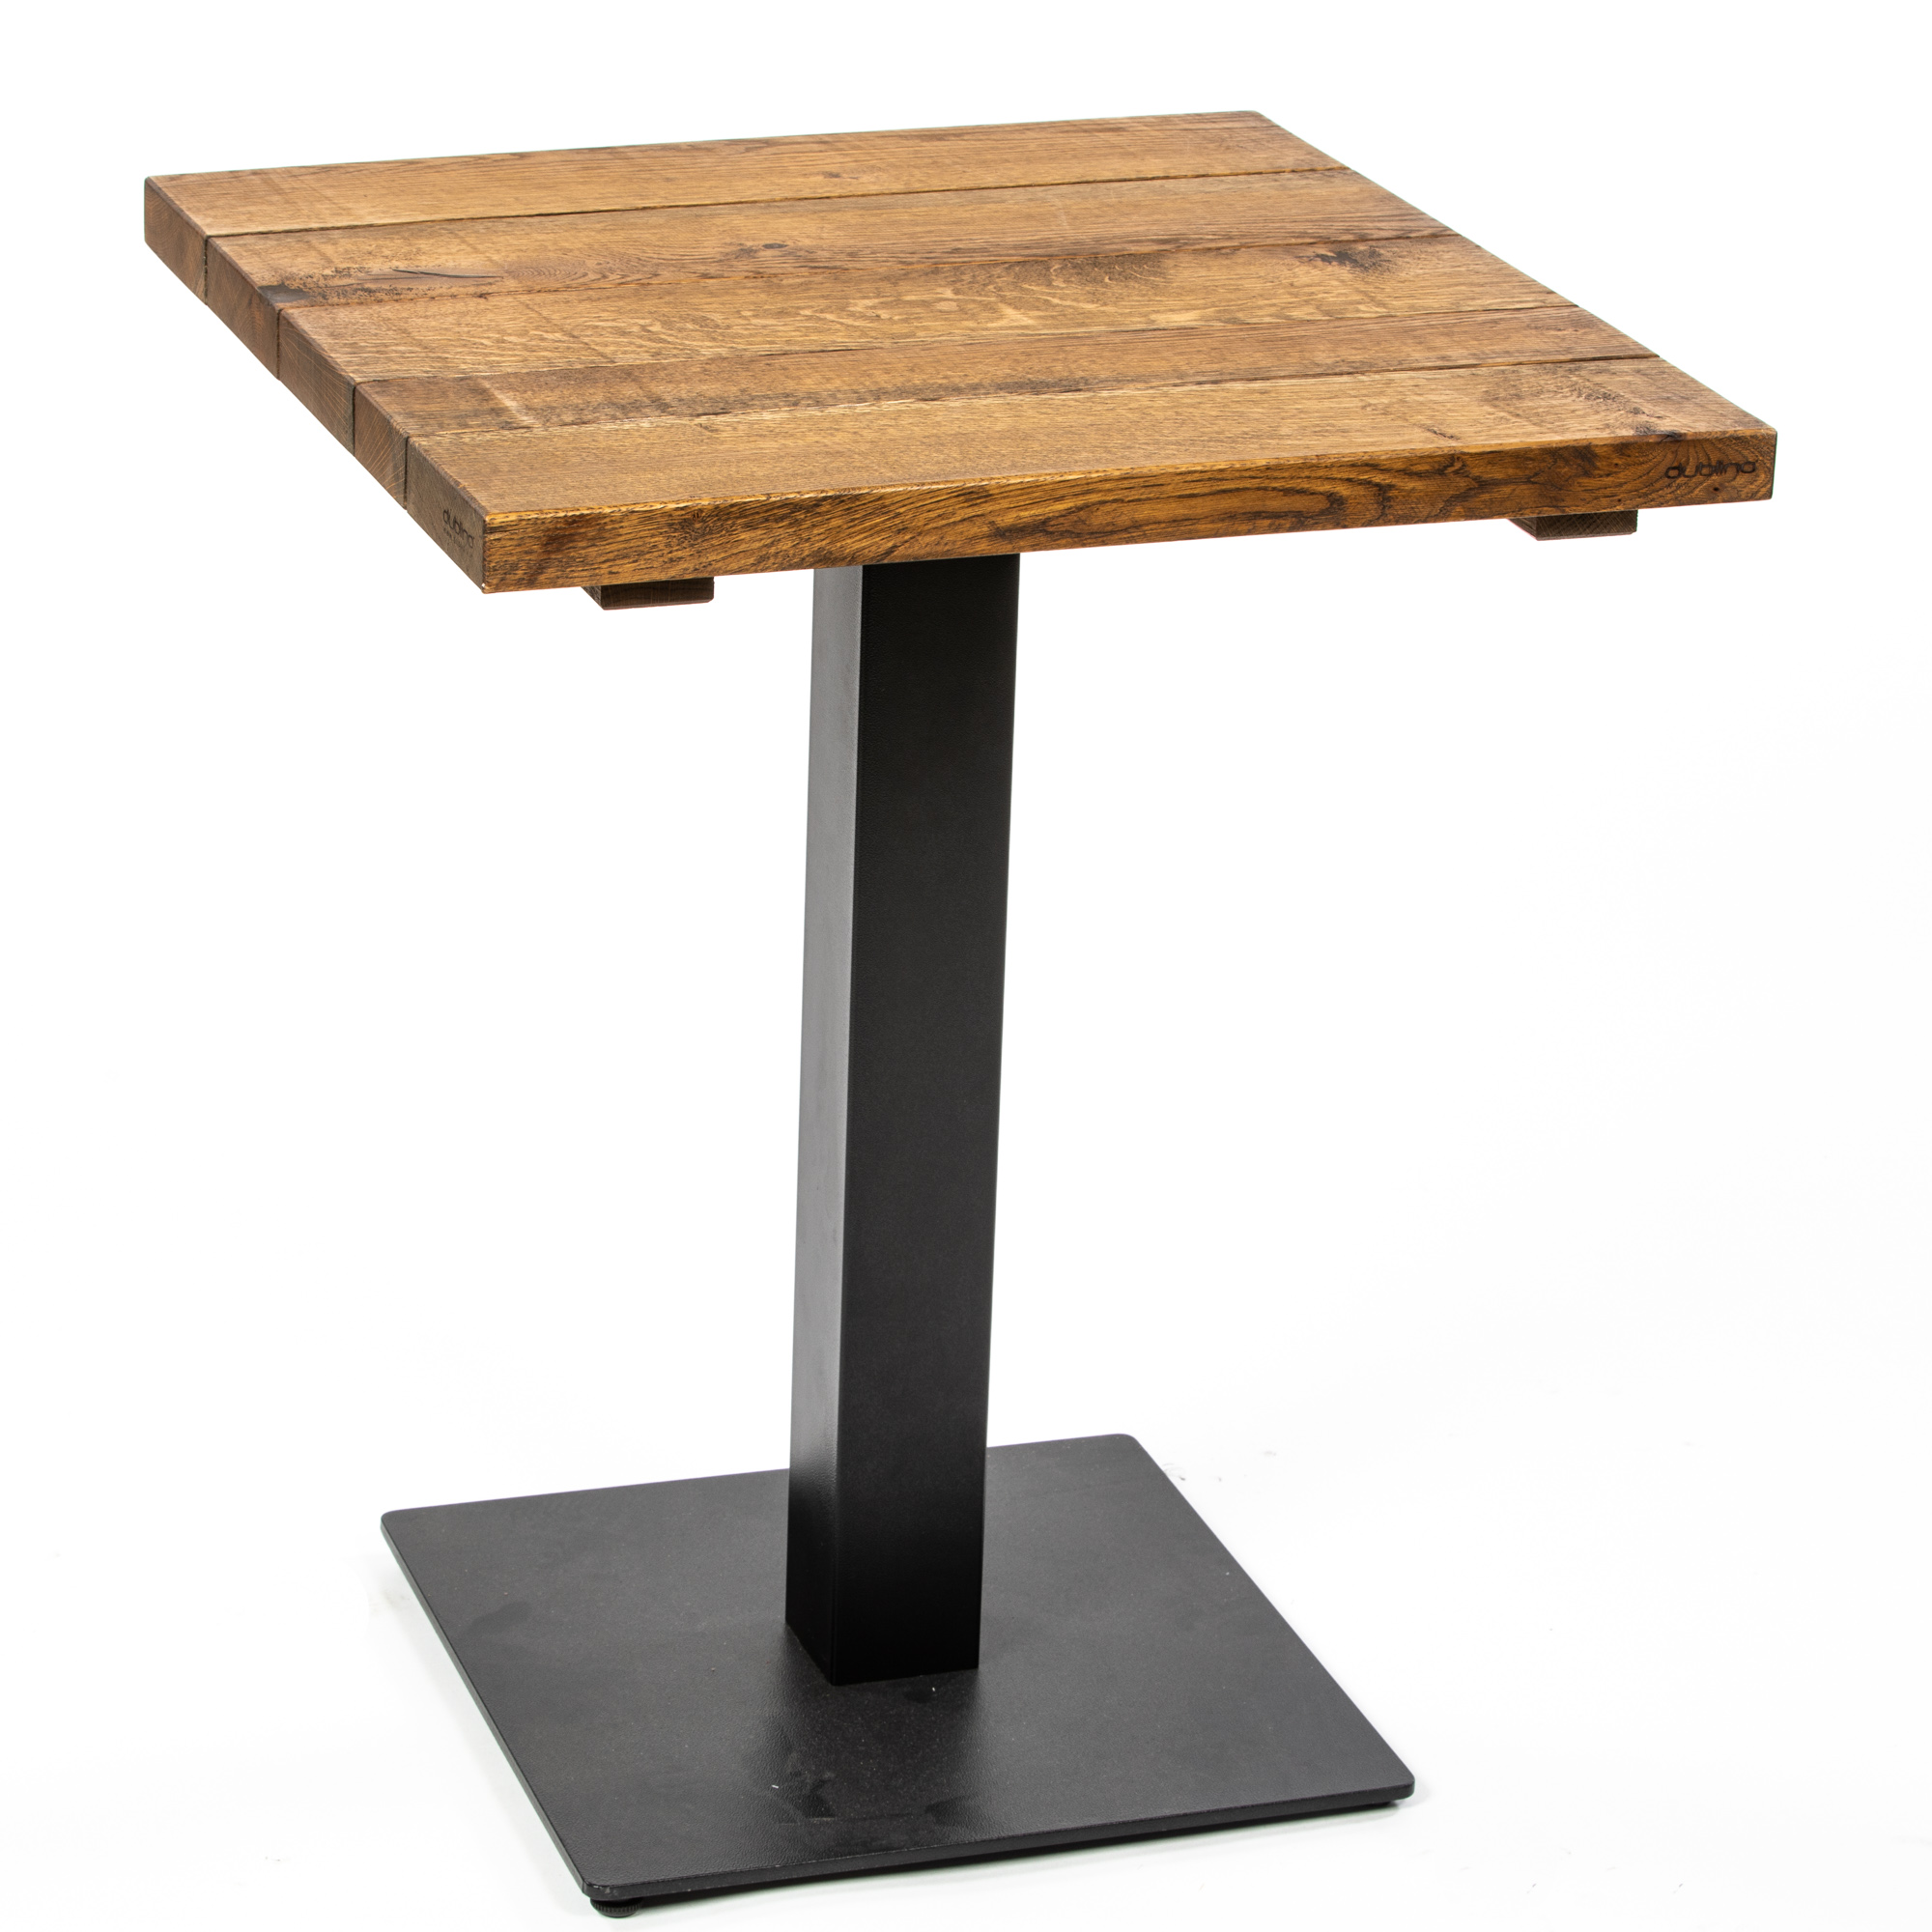 Tischplatte Rustikal Oiled - Massivholz - Eichenlatten - geölt